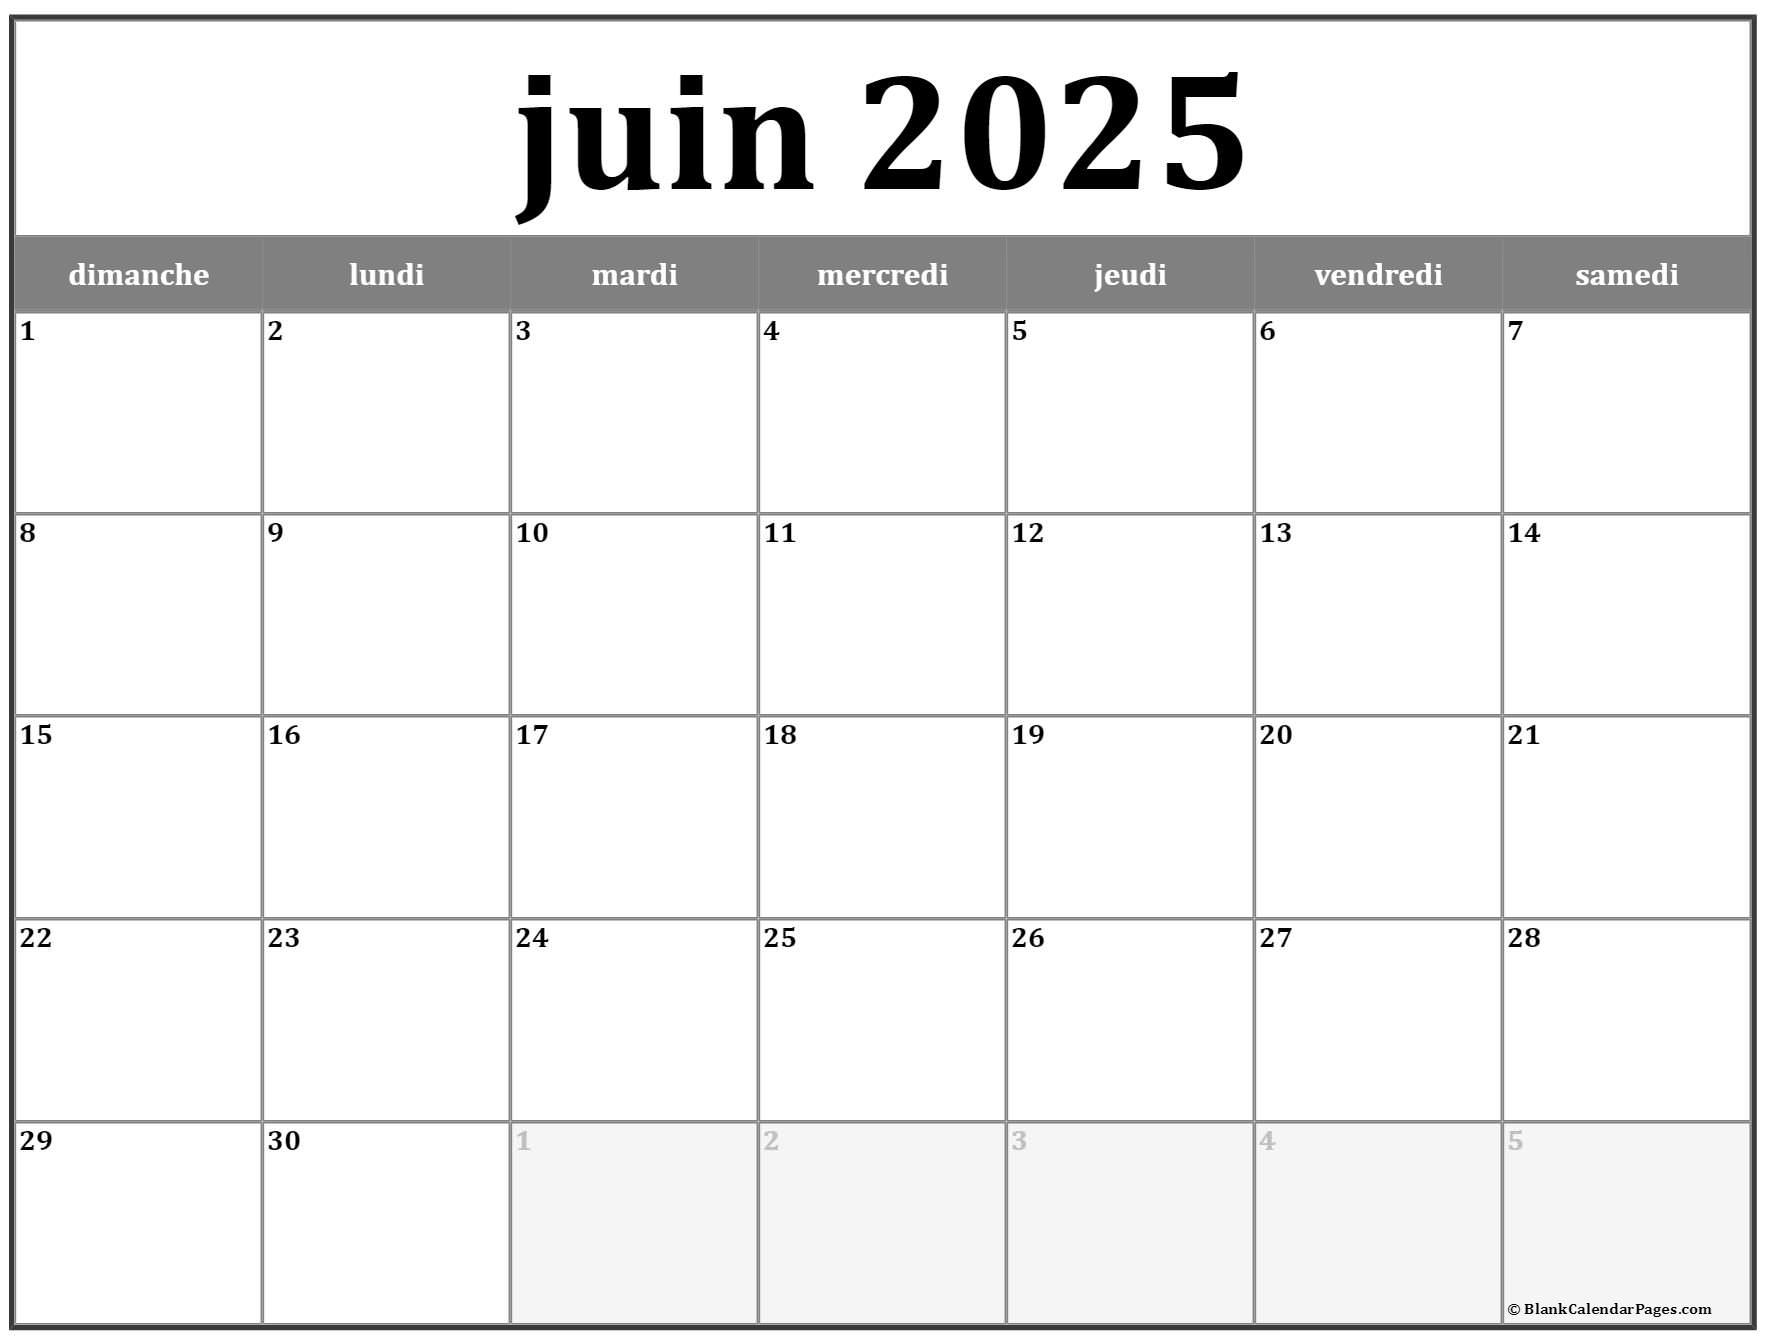 juin-2025-calendrier-imprimable-calendrier-gratuit